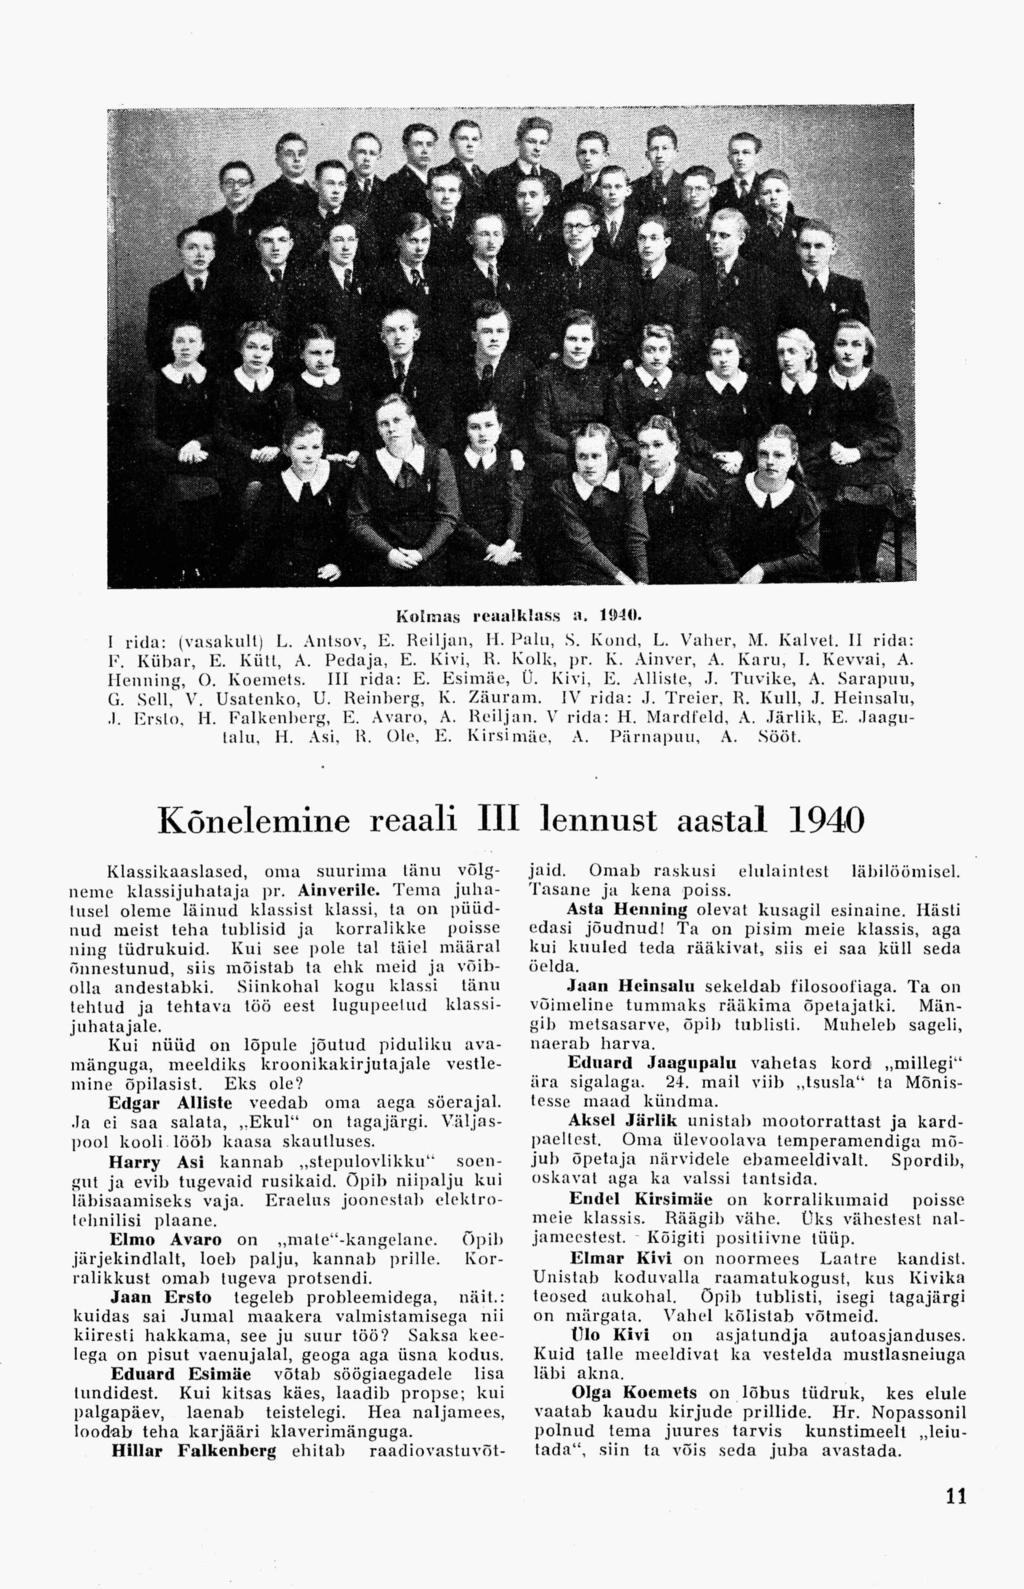 Kolmas reaalklass a, 1940. I rida: (vasakult) L. Antsov, E. Reiljan, H. Palu, S. Kolid, L. Vaher, M. Kalvet. II rida: F. Kübar, E. Kiin, A. Pedaja, E. Kivi, R. Kolk, pr. Iv. Ainver, A. Karu, I.